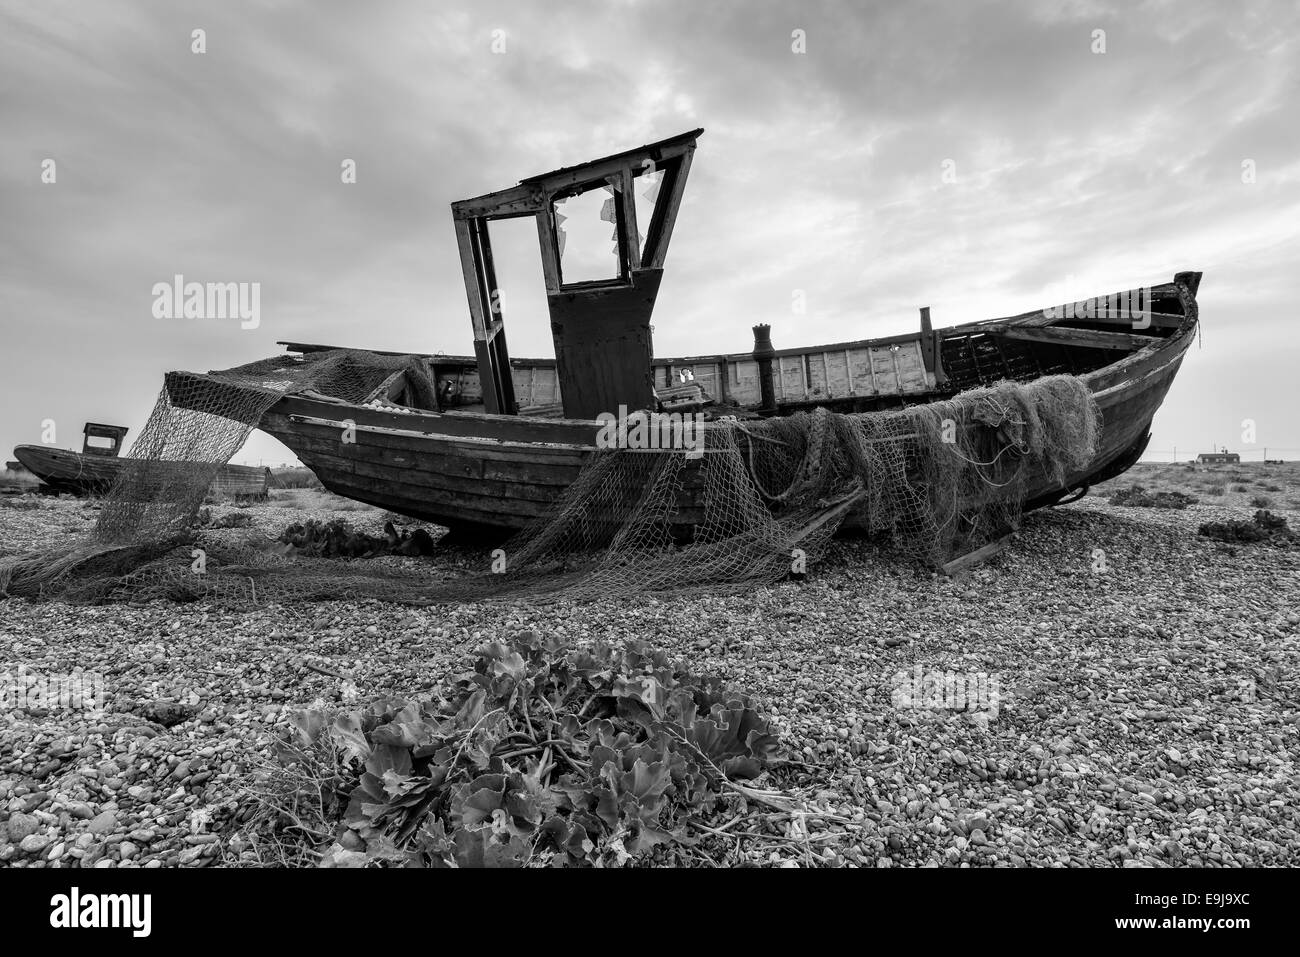 Un vieux bateau de pêche avec des filets en noir et blanc Banque D'Images